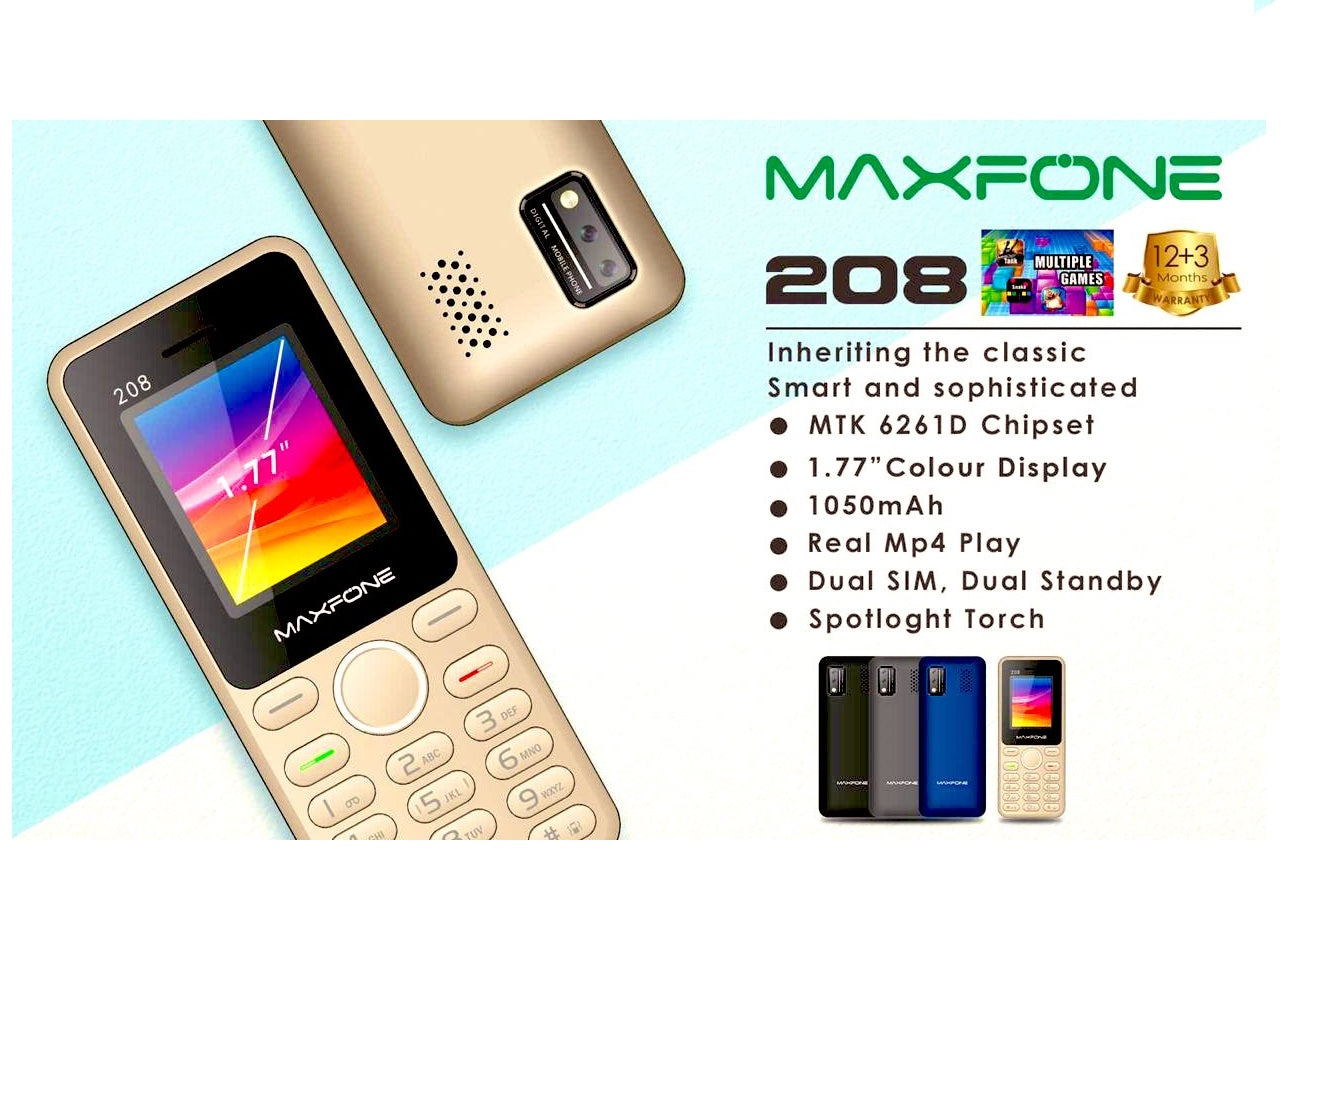 Maxfone 208, 1050mah battery